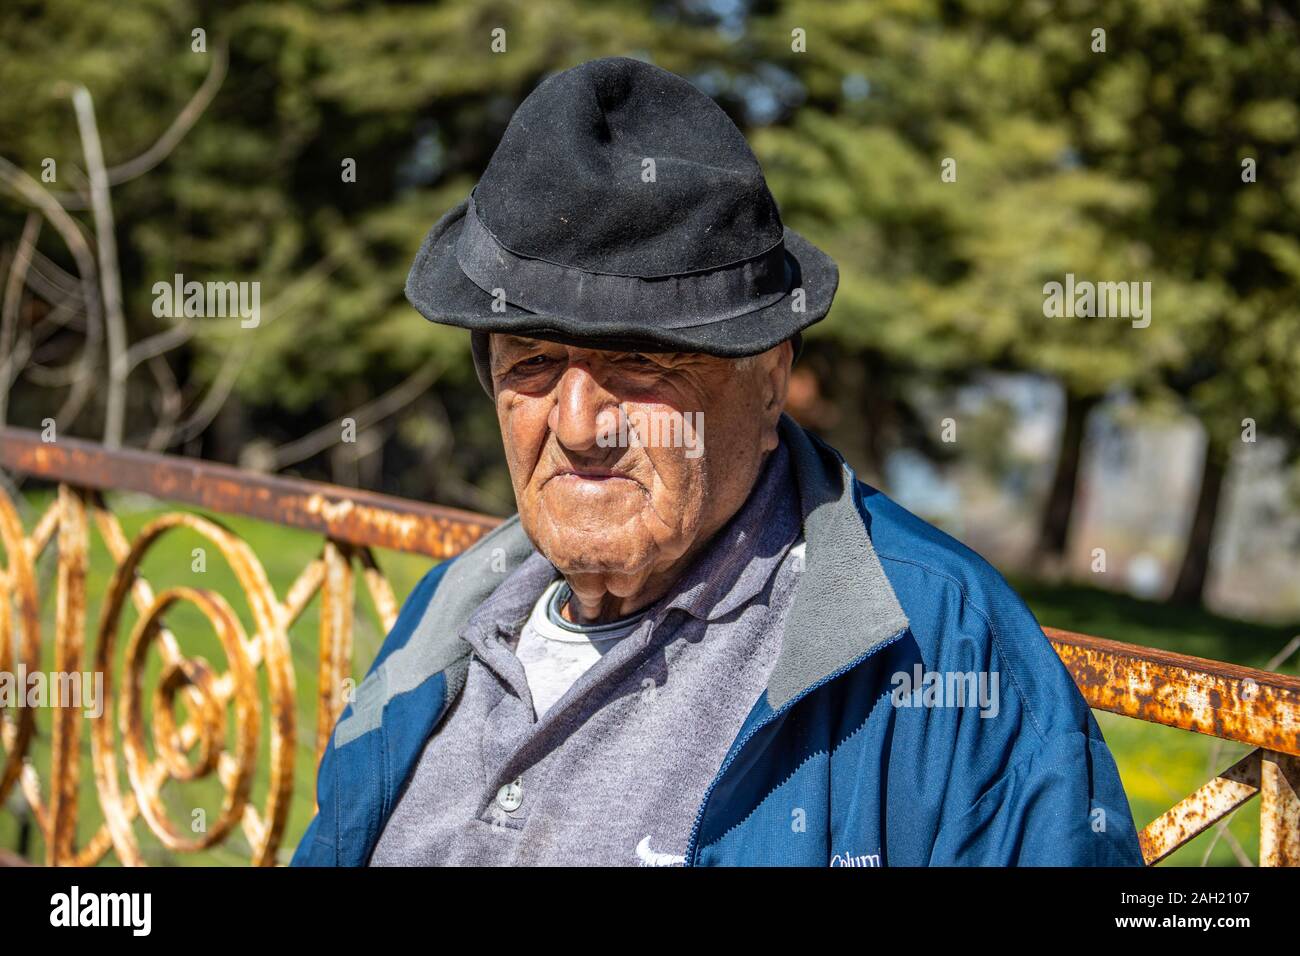 Elderly Lebanese man, Bcharre or Bsharri, Lebanon Stock Photo